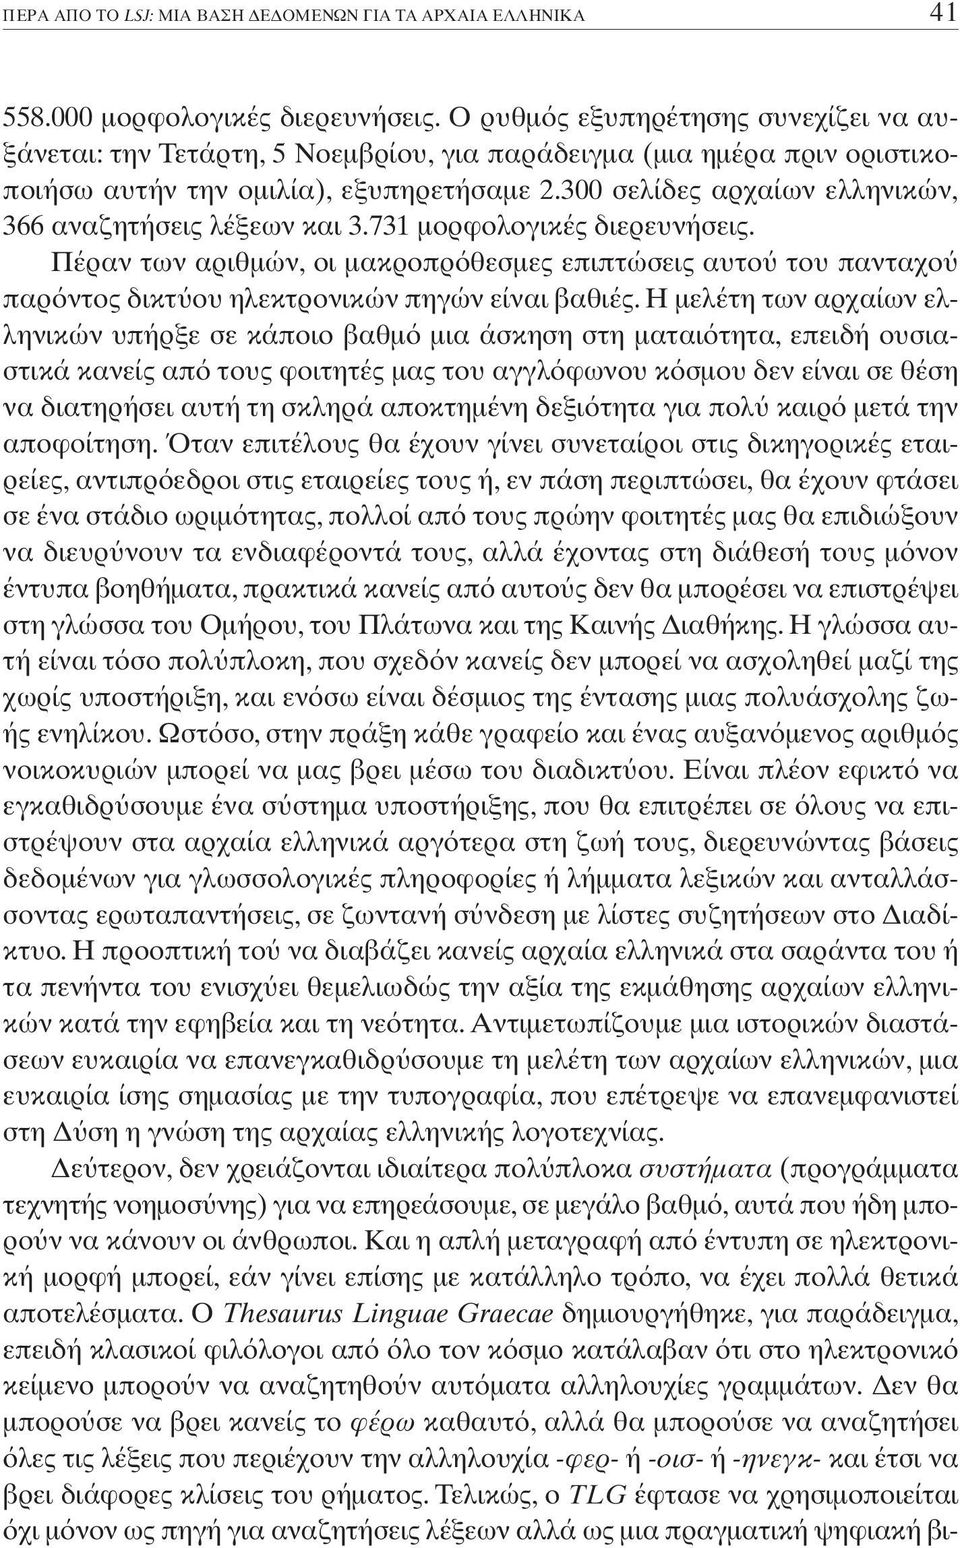 300 σελίδες αρχαίων ελληνικών, 366 αναζητήσεις λέξεων και 3.731 µορφολογικές διερευνήσεις.